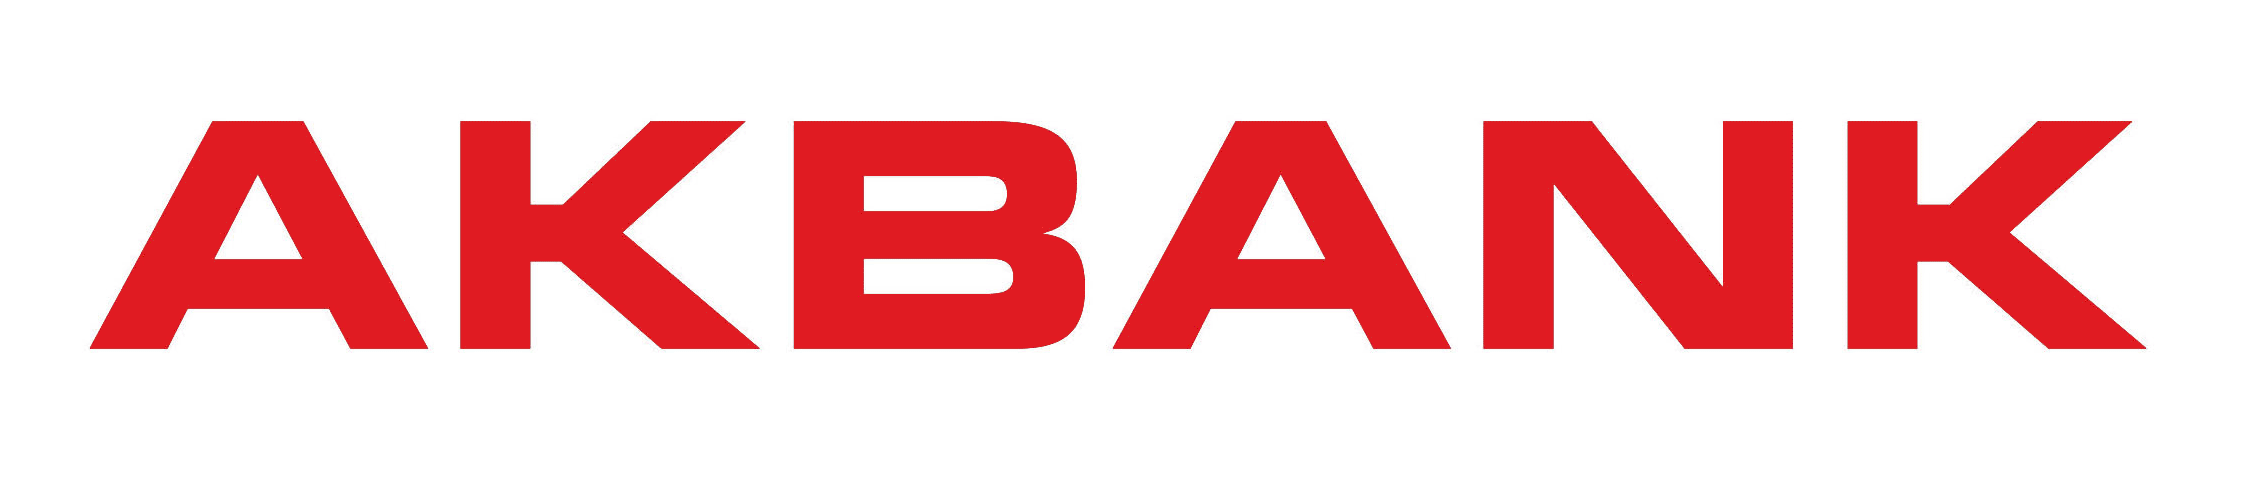 Akbank Logo photo - 1